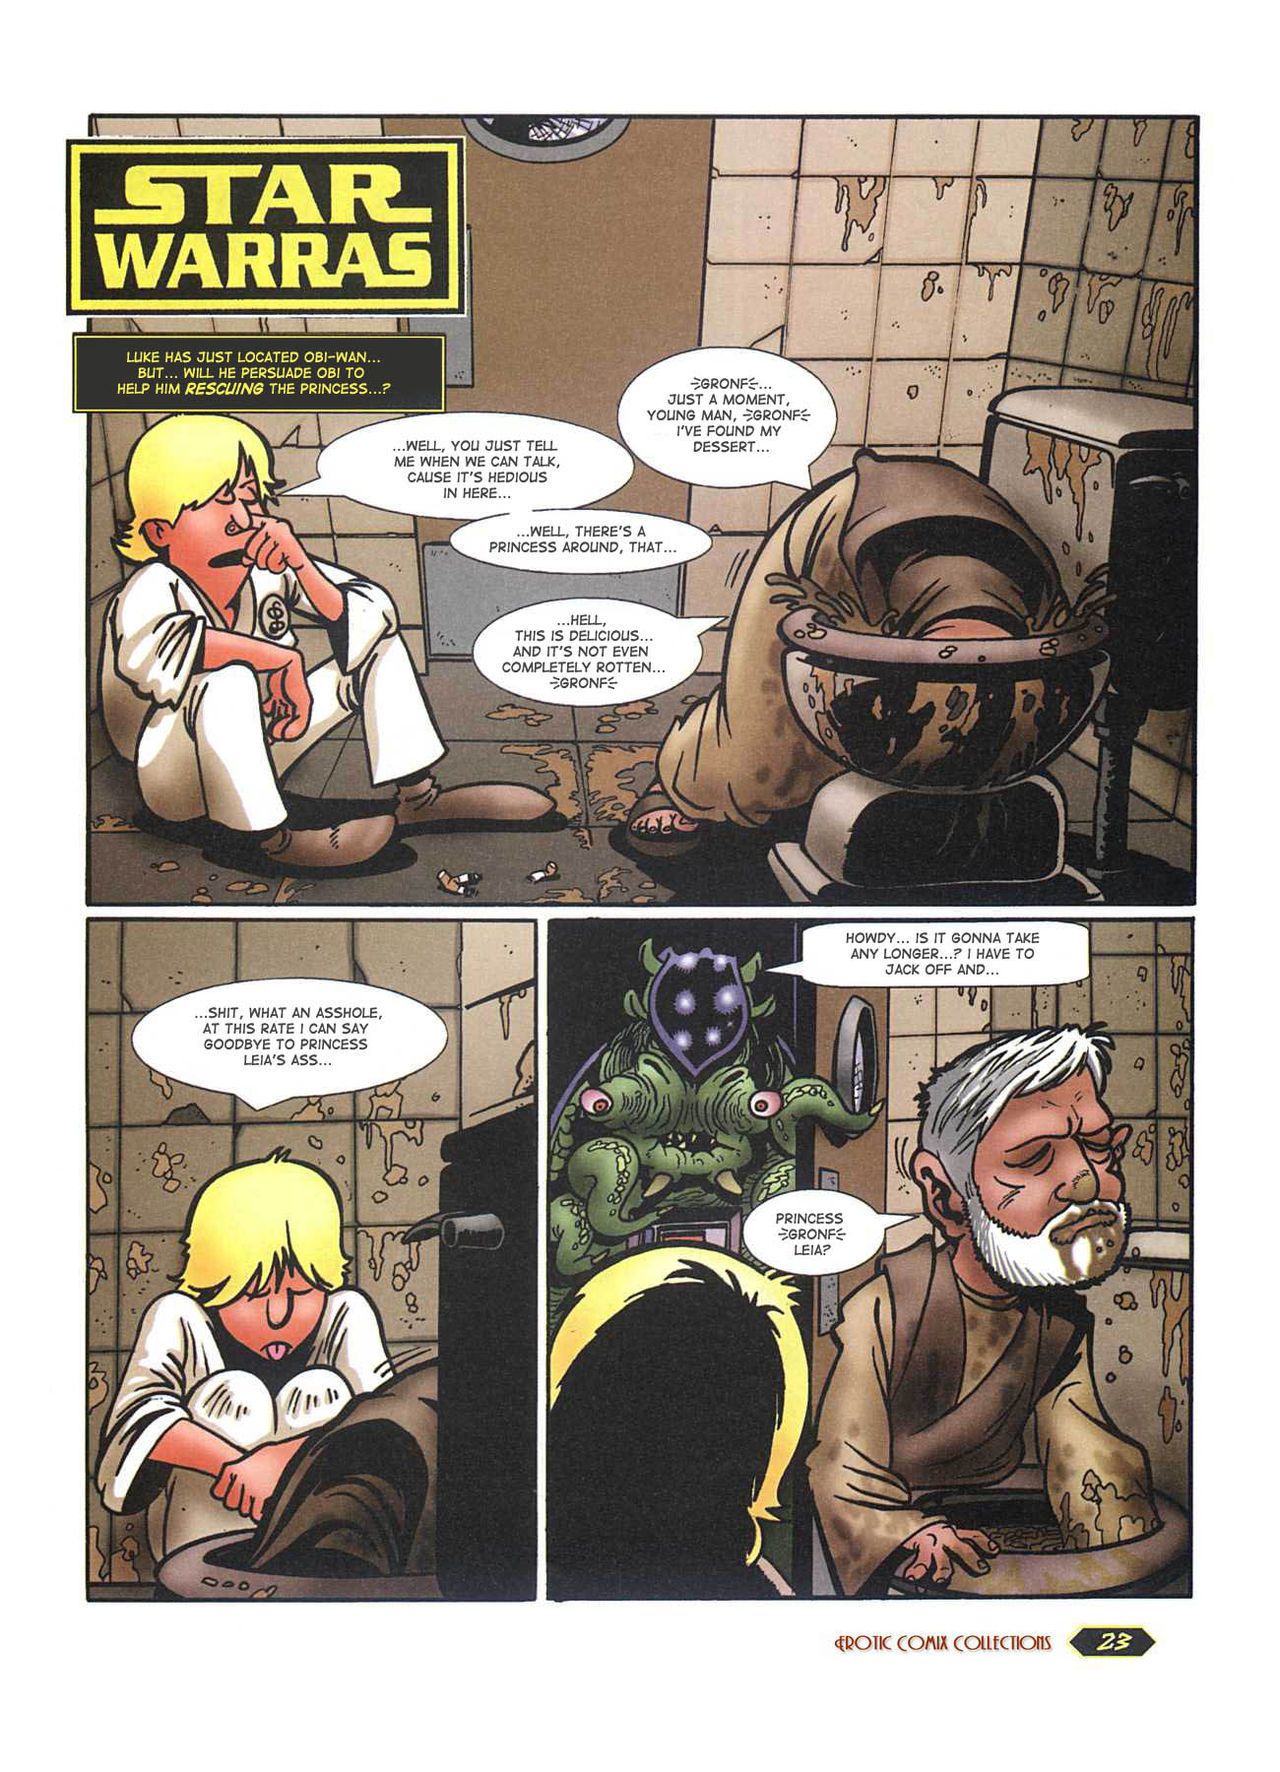 Star Warras - part 2